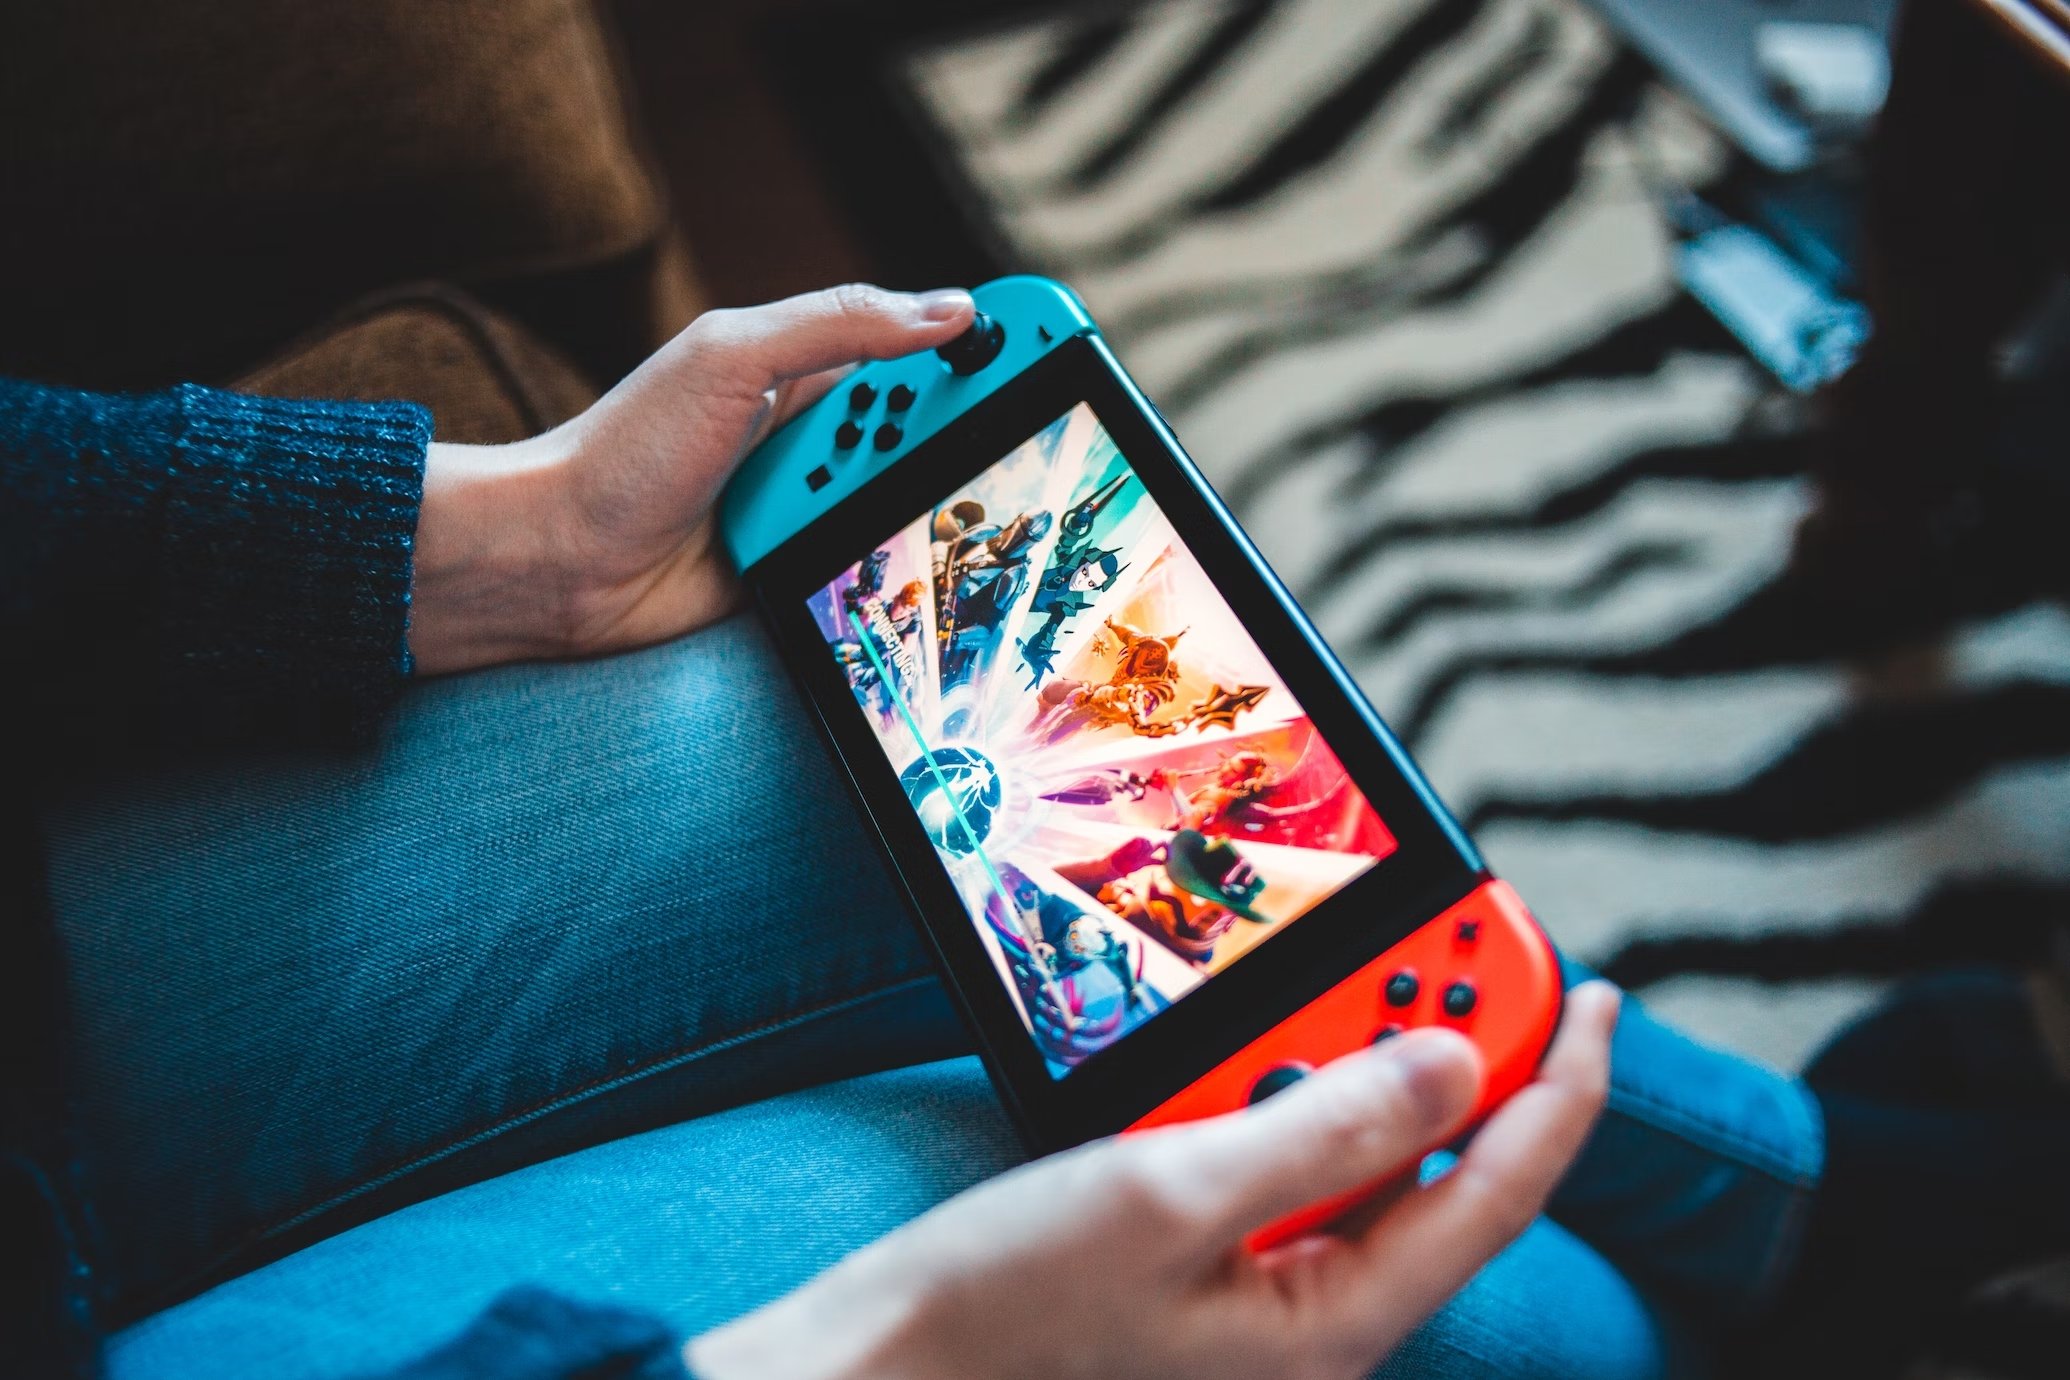 Consola Nintendo Switch a ser utilizada com jogo desconhecido no ecrã